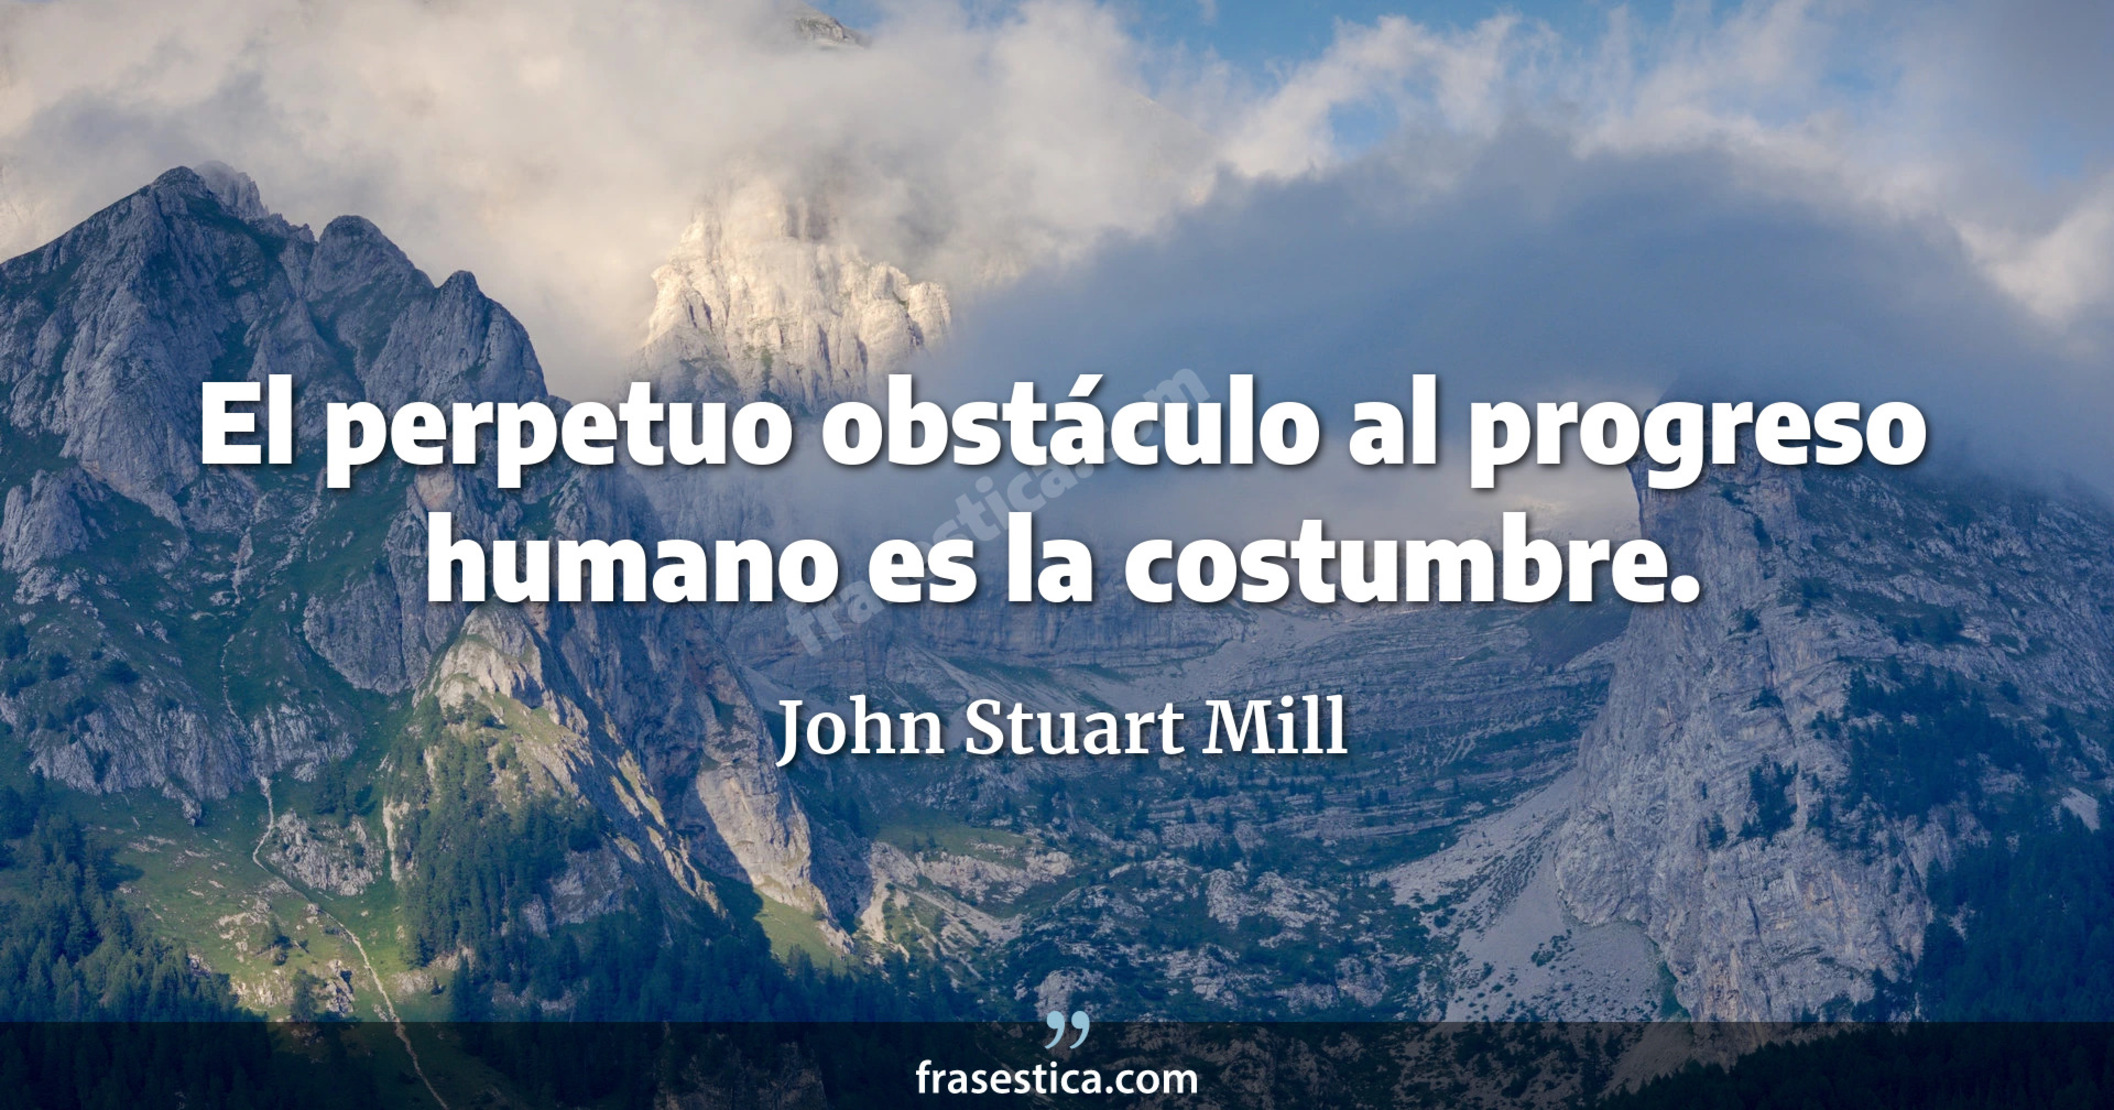 El perpetuo obstáculo al progreso humano es la costumbre. - John Stuart Mill